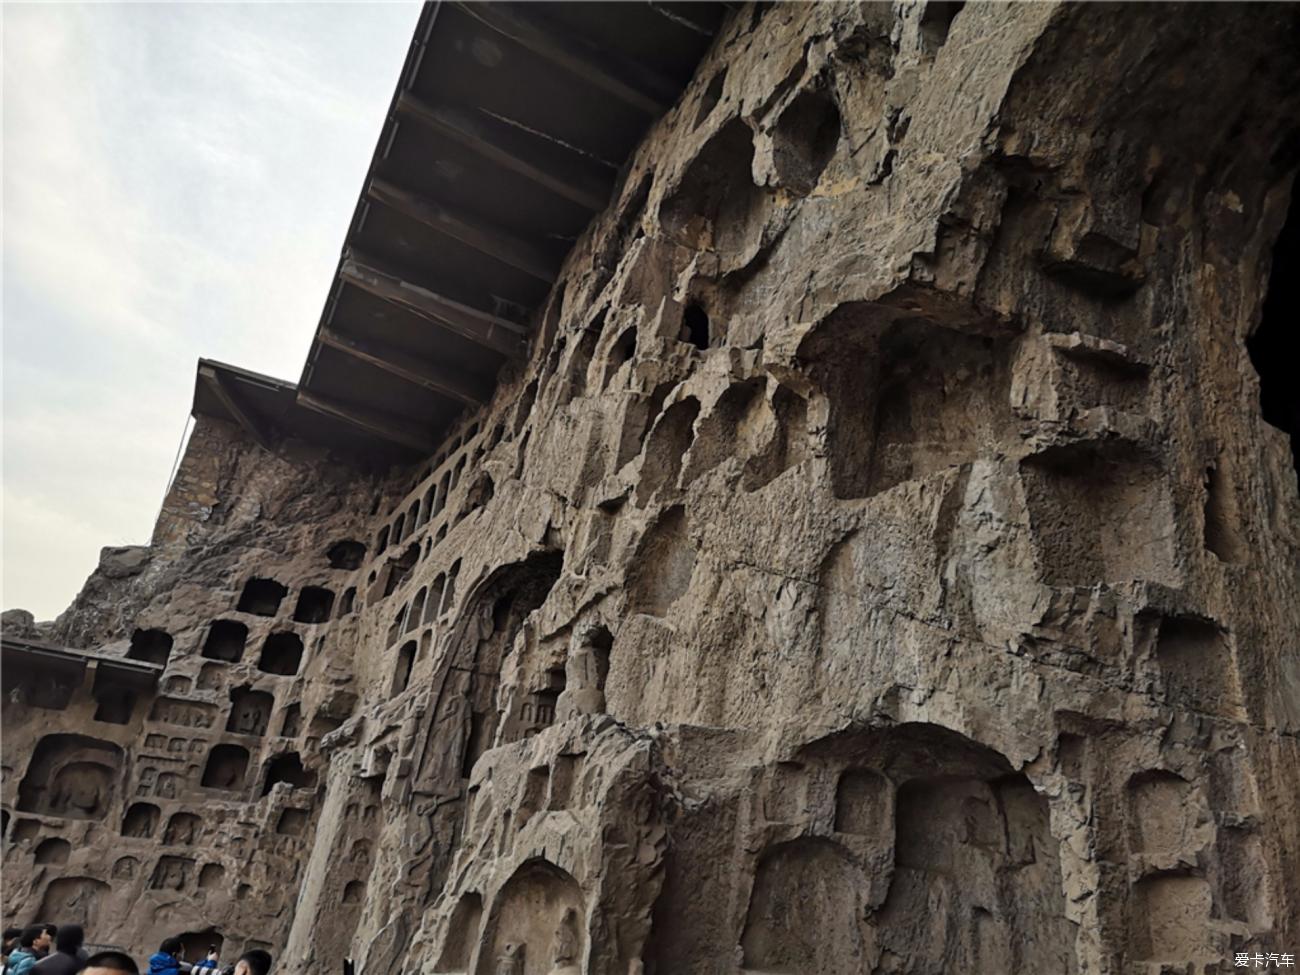 欣赏中国石刻艺术的最高峰龙门石窟